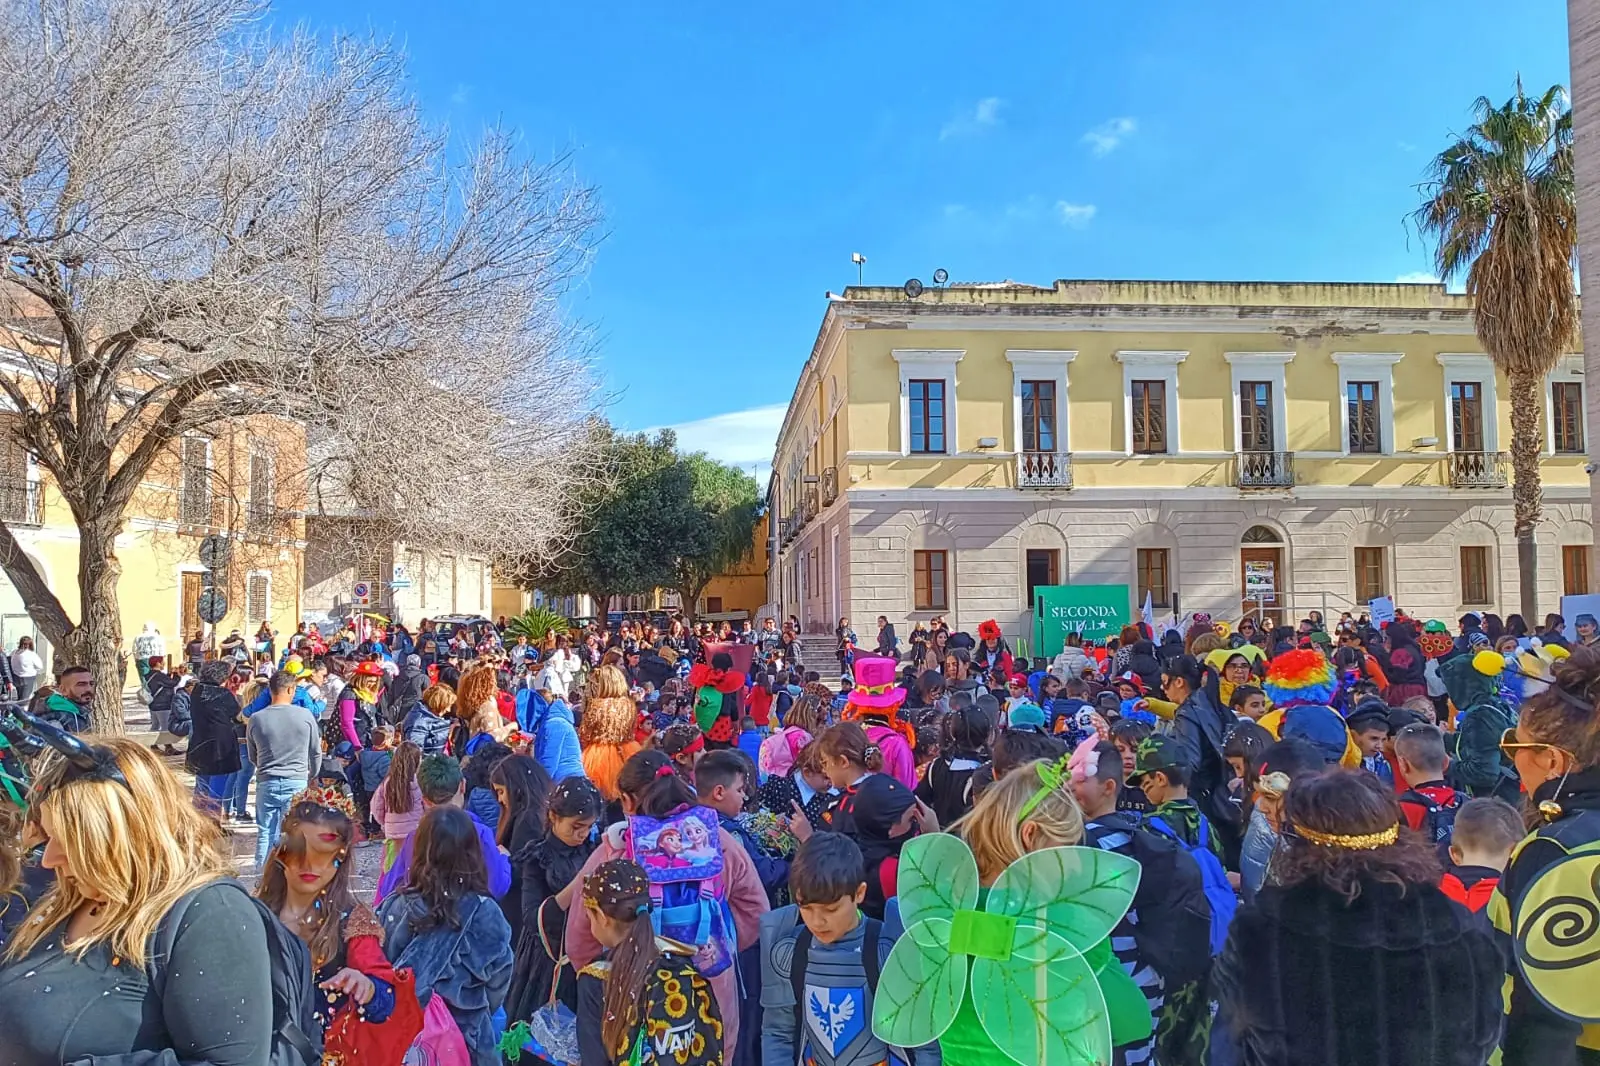 La sfilata del carnevale tenutasi su iniziativa della scuola per il giovedì grasso (foto Serreli)